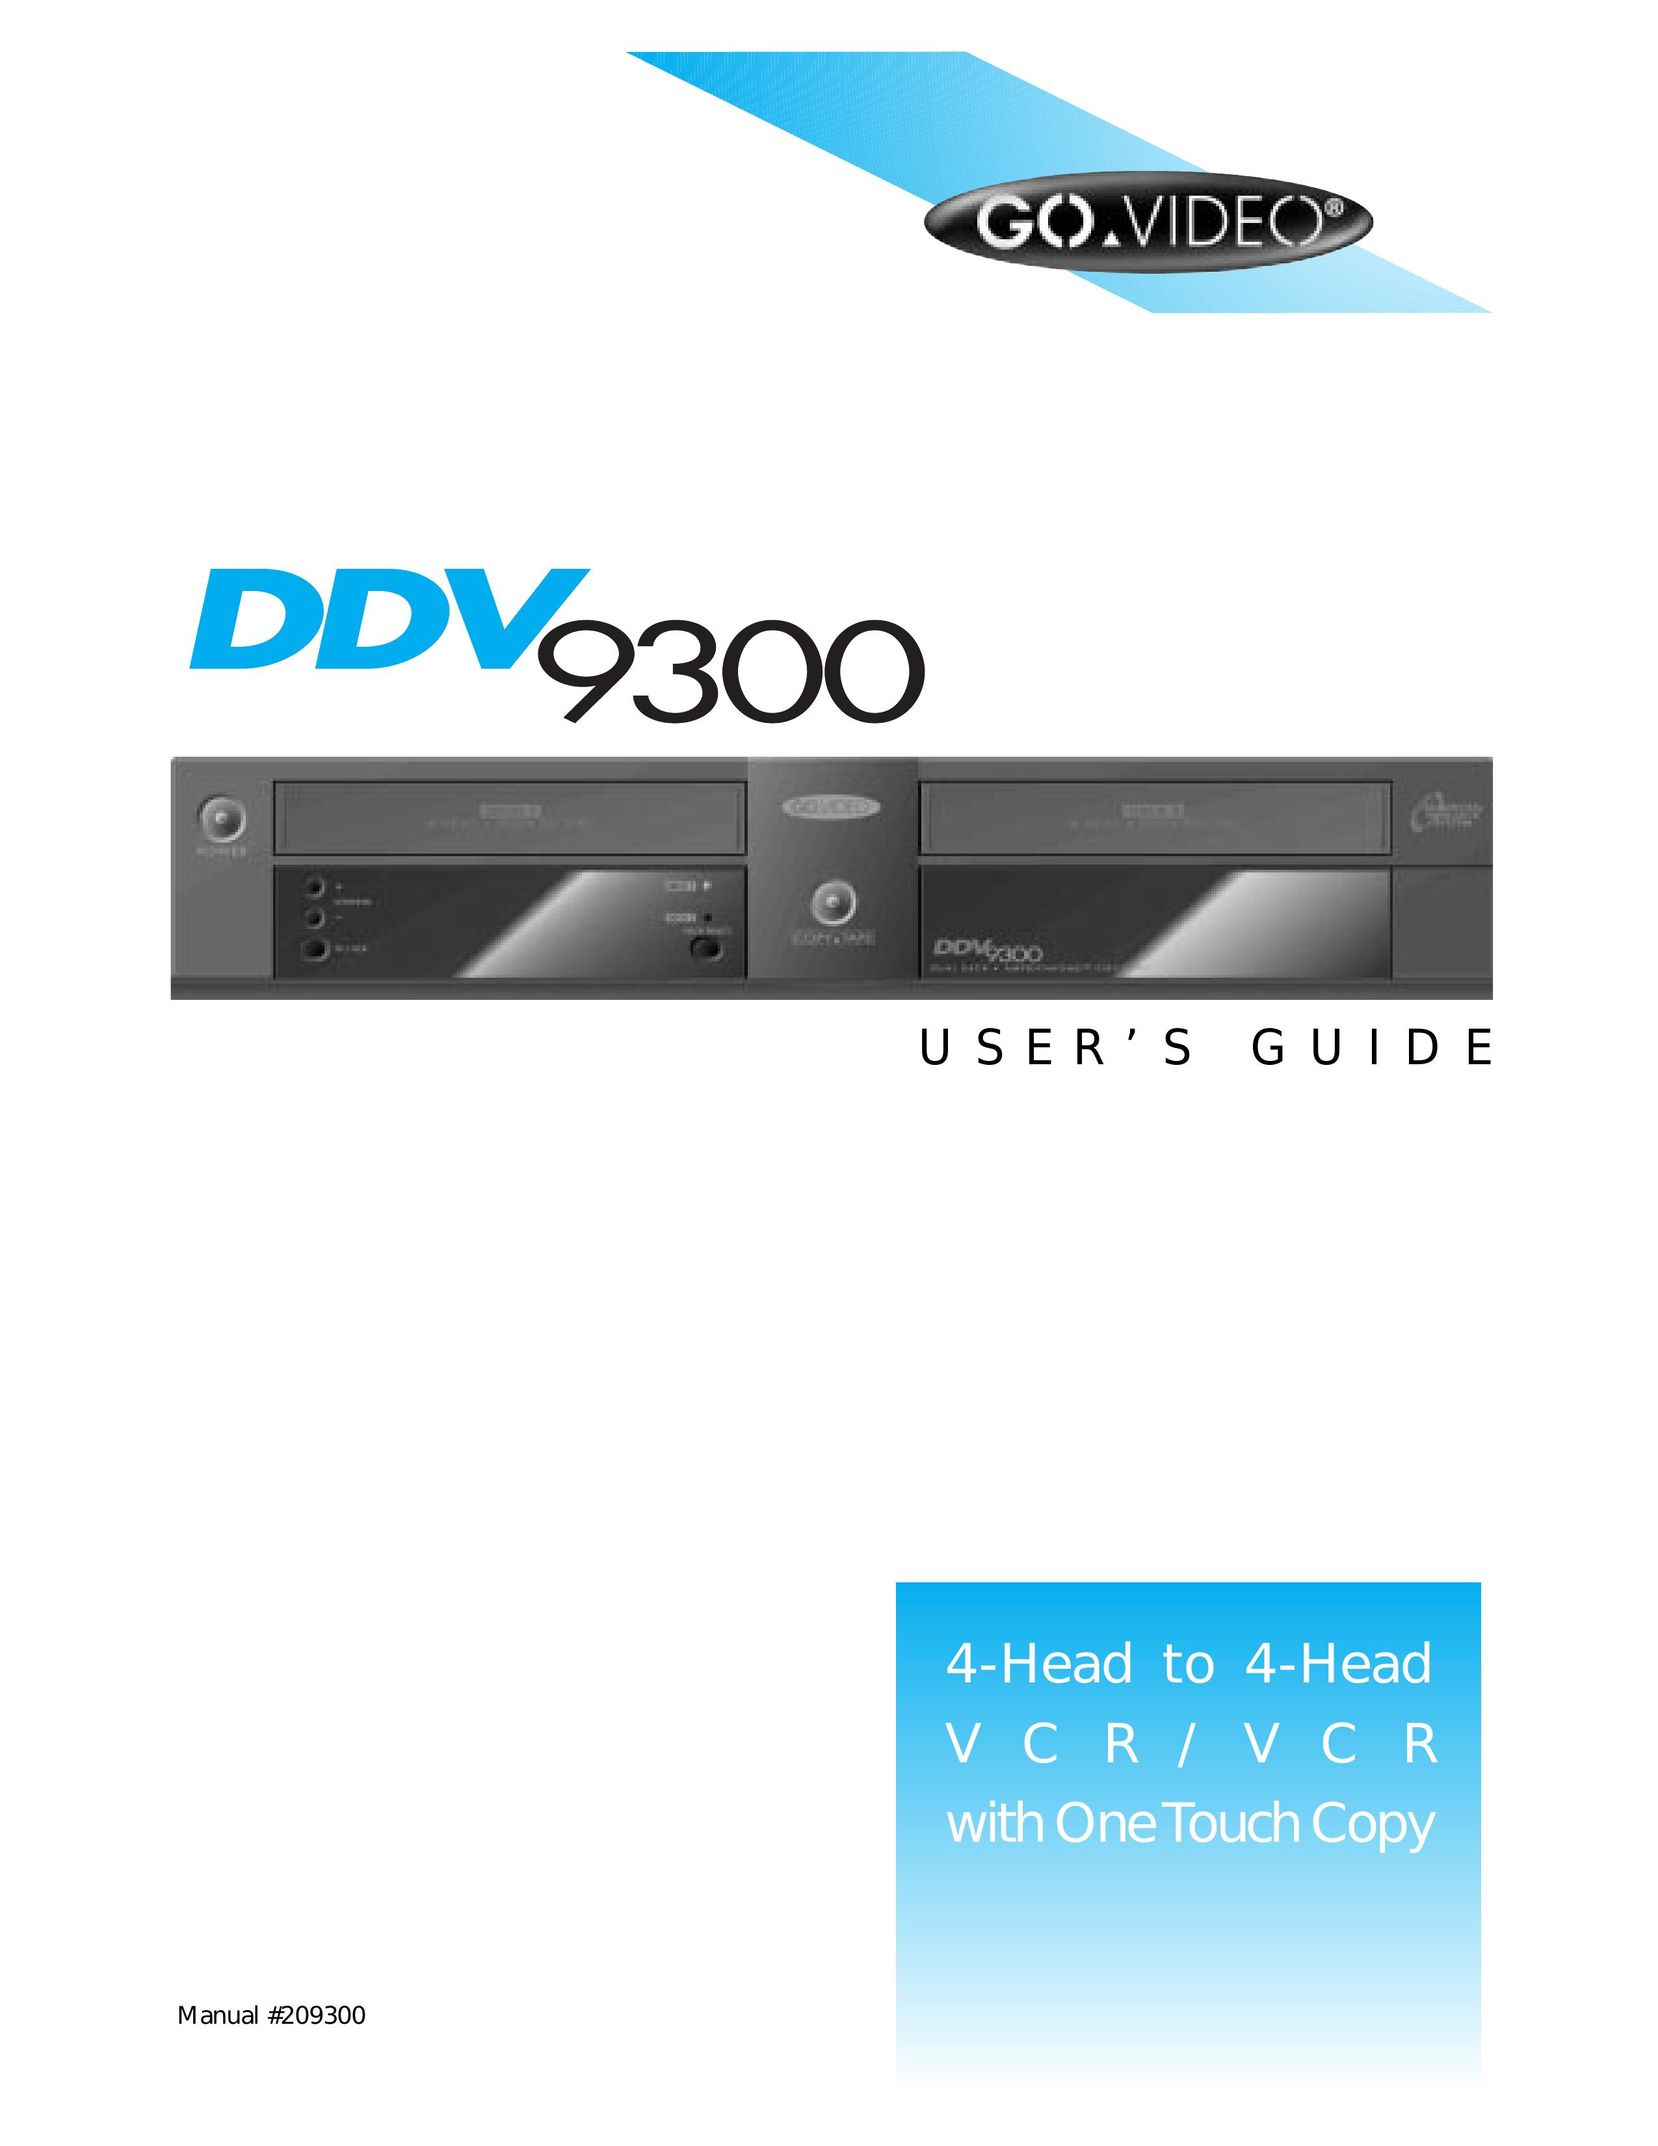 GoVideo DDV 9300 VCR User Manual